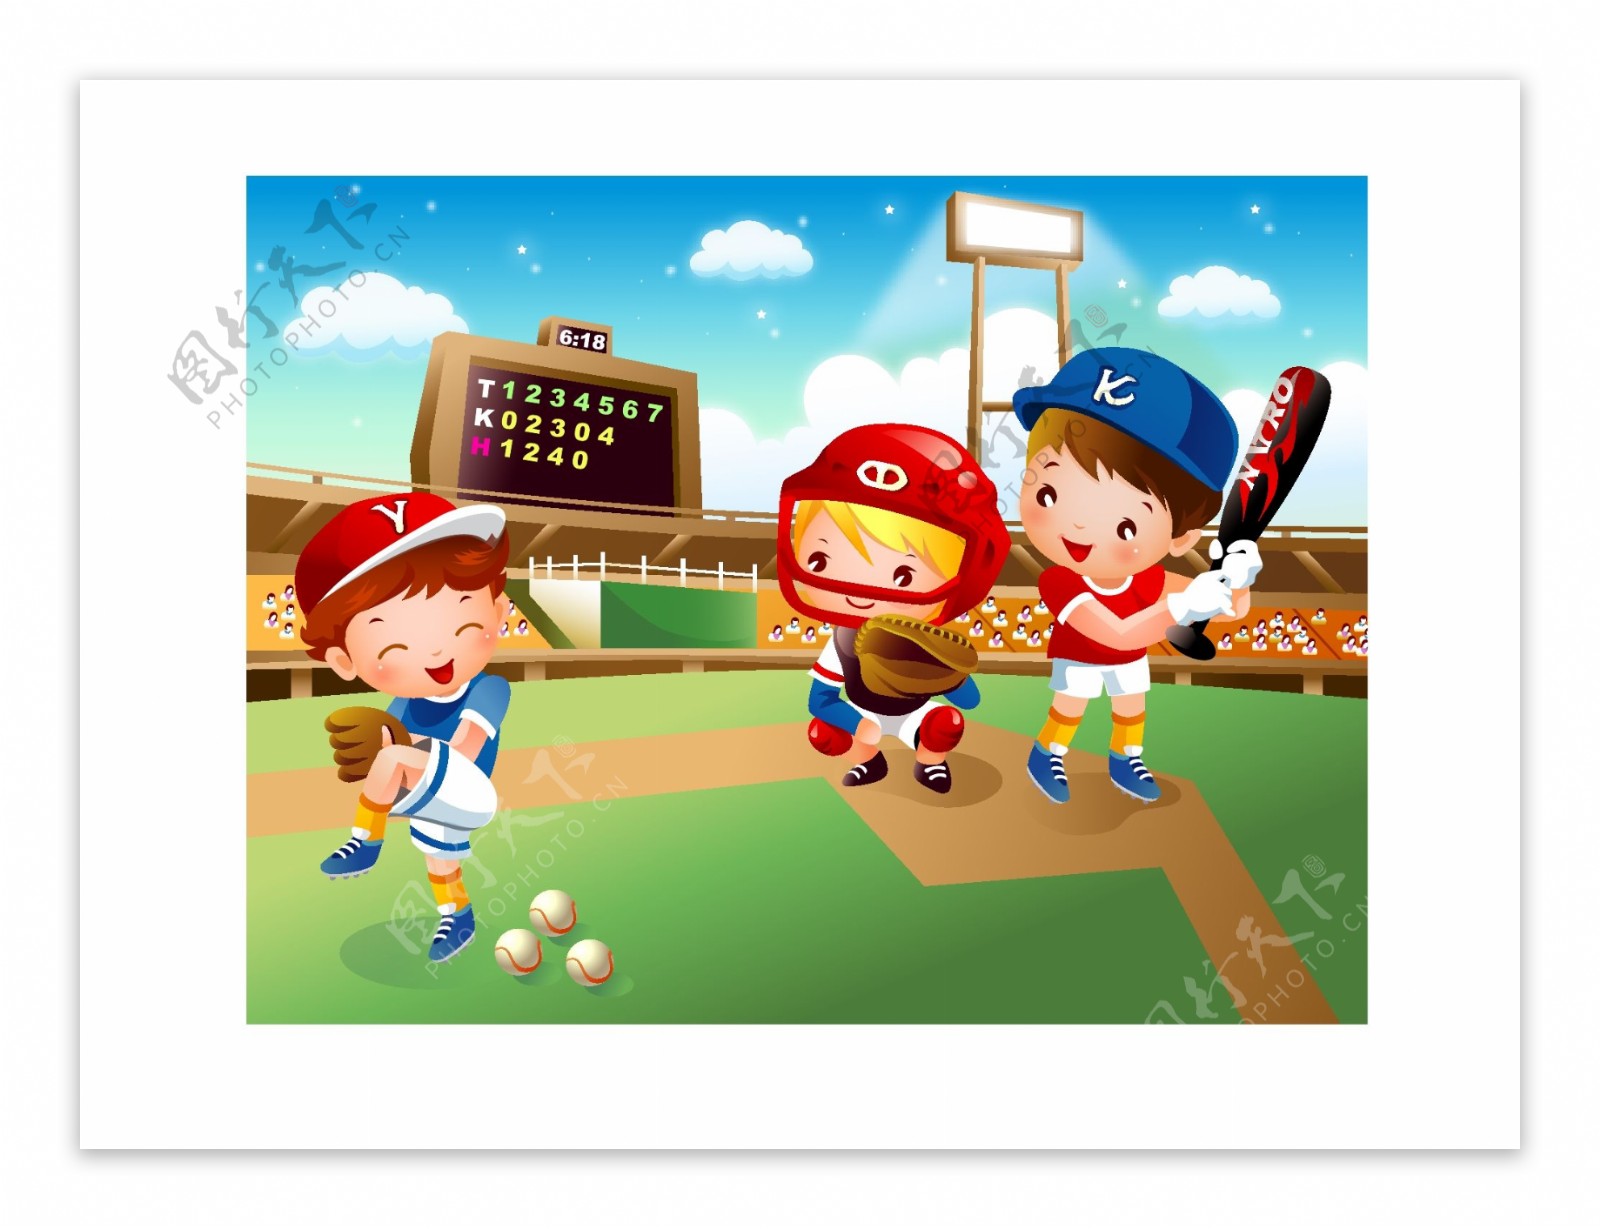 可爱卡通棒球运动儿童矢量素材